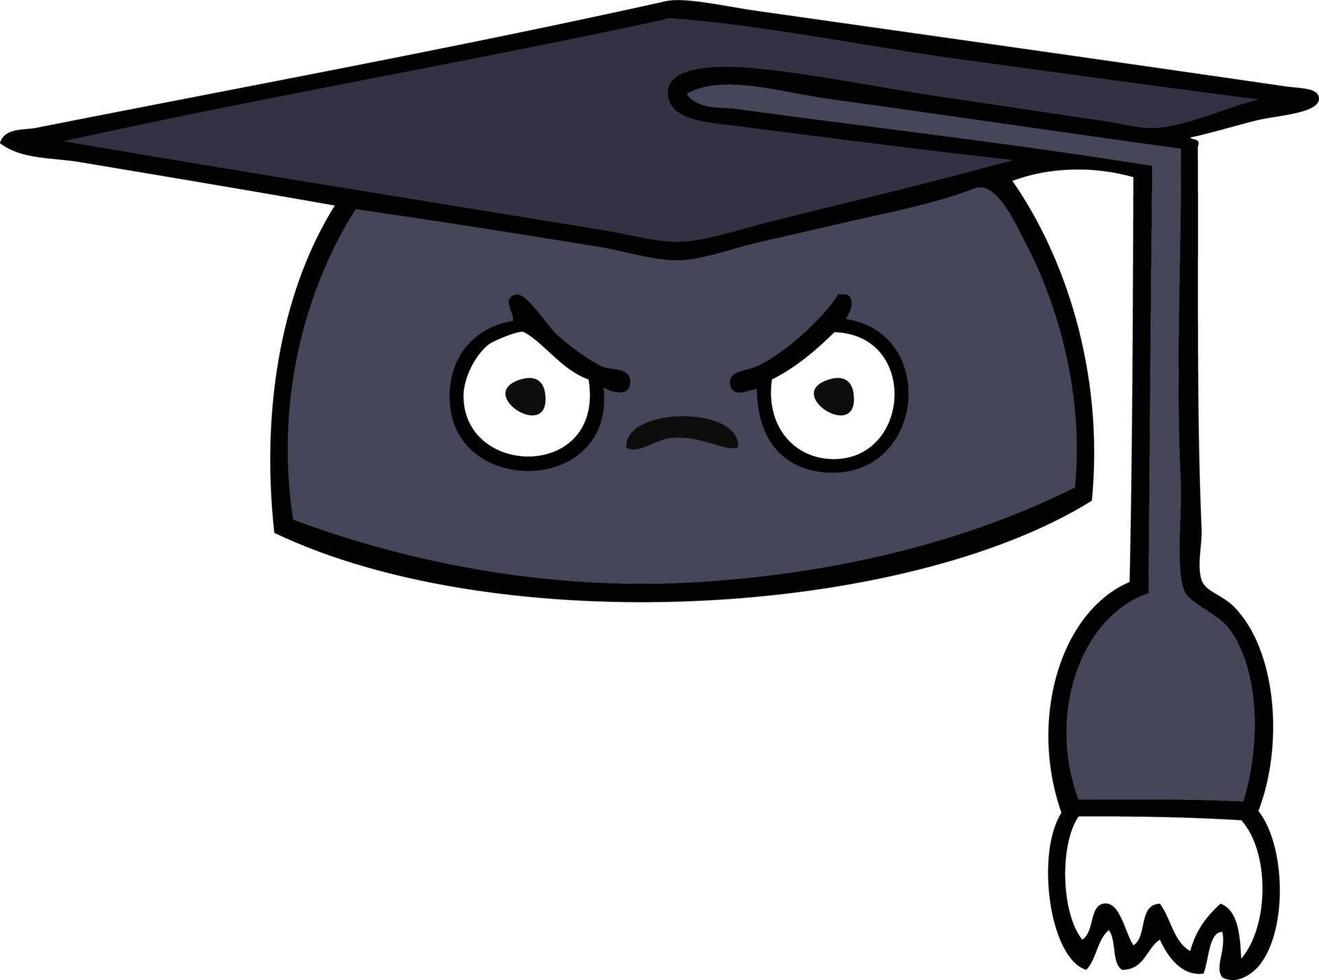 cappello di laurea simpatico cartone animato vettore